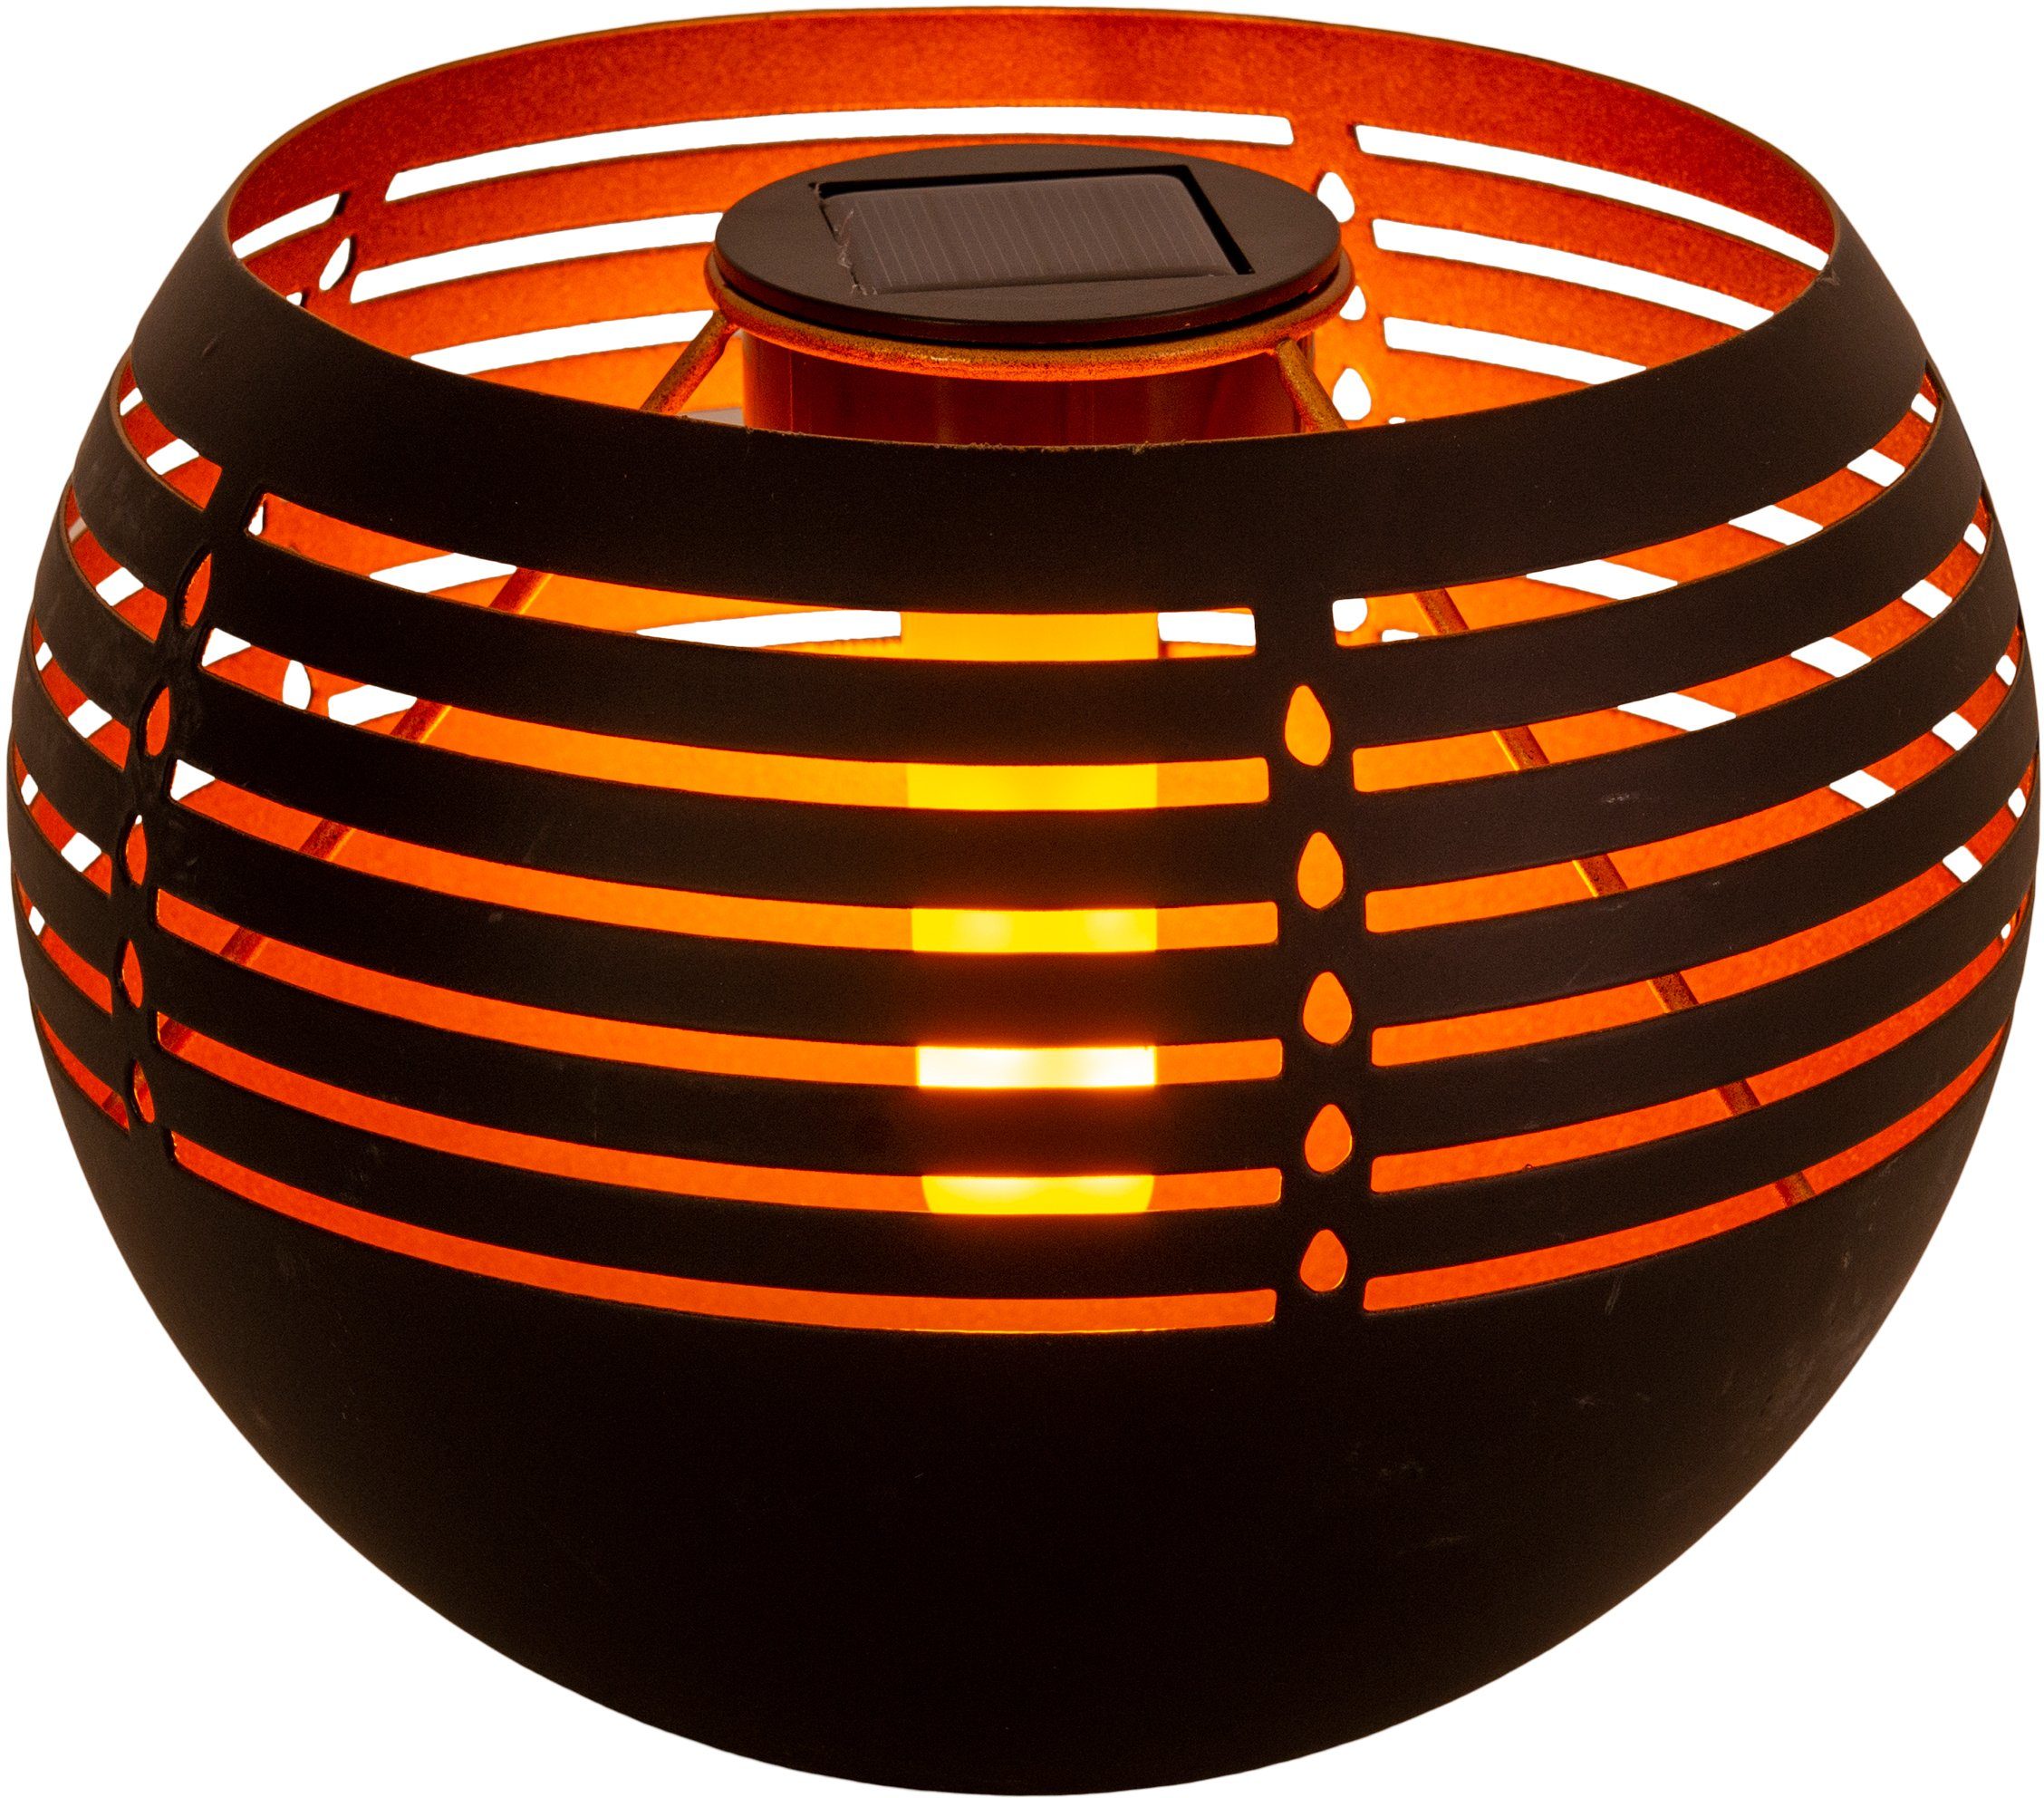 Schiebeschalter, näve fest schwarz/gold Eisen/Kunststoff, Flammeneffekt, Solar-Tischleuchte, integriert, Außen-Tischleuchte Warmweiß, LED LED